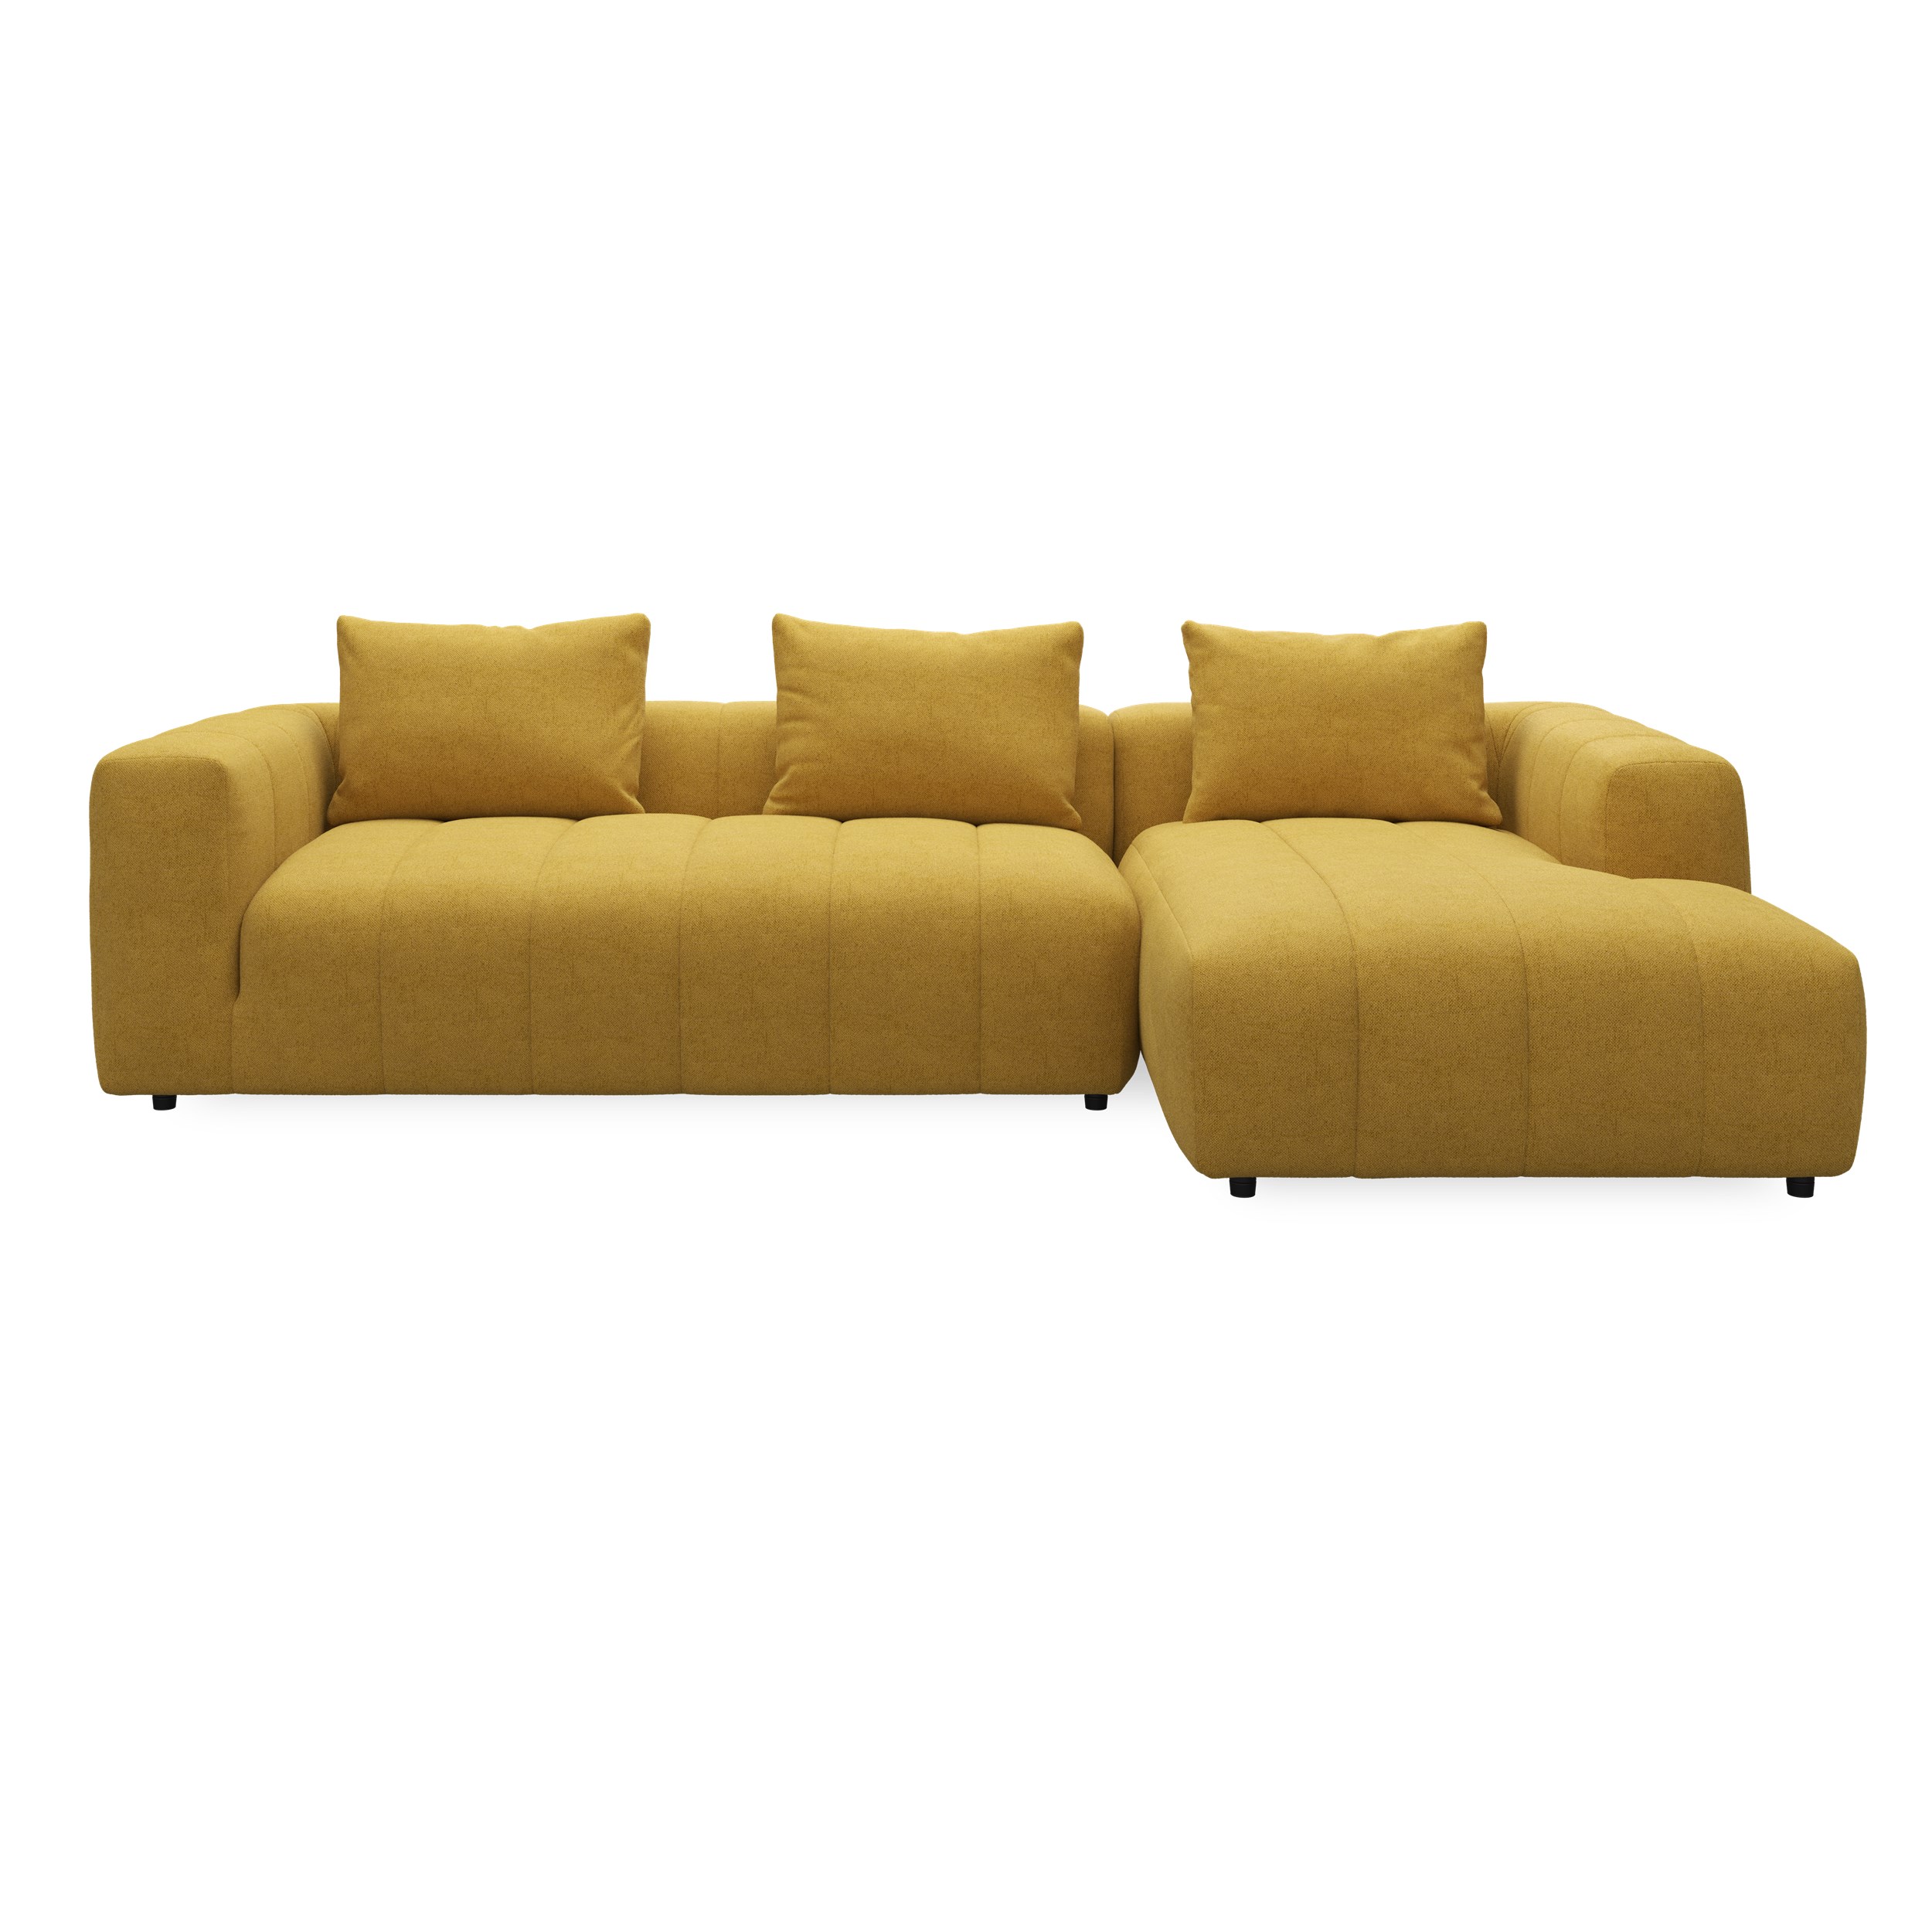 Ingvar højrevendt sofa med chaiselong 